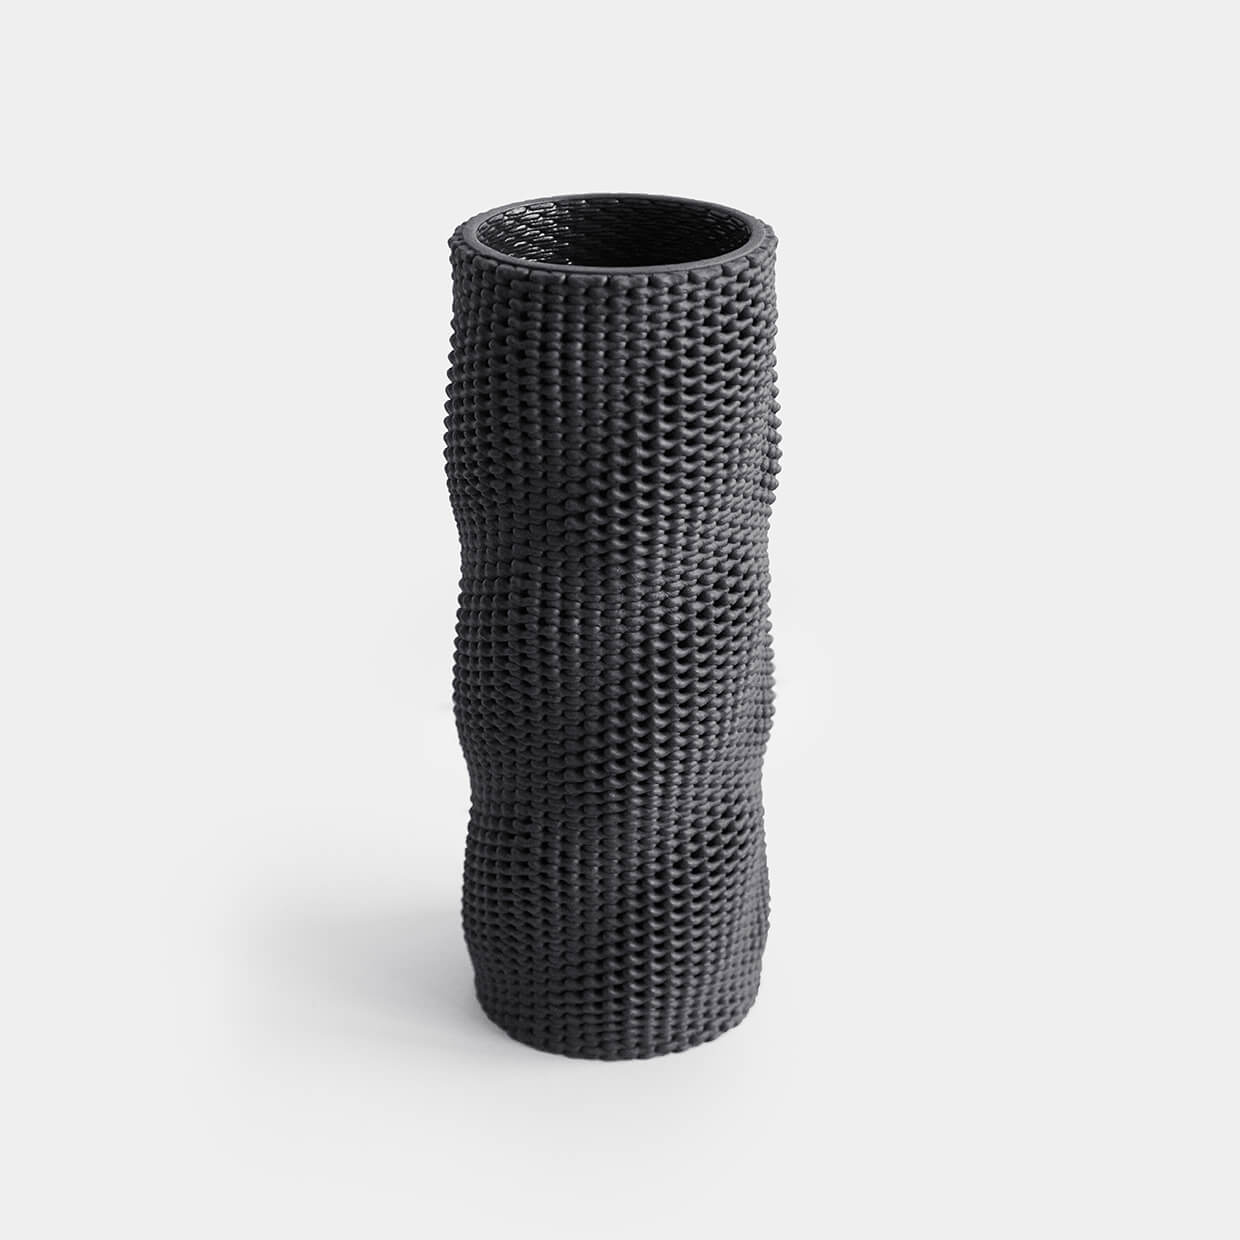 Kilim - 3d printed ceramic vase Kilim by Drag And Drop